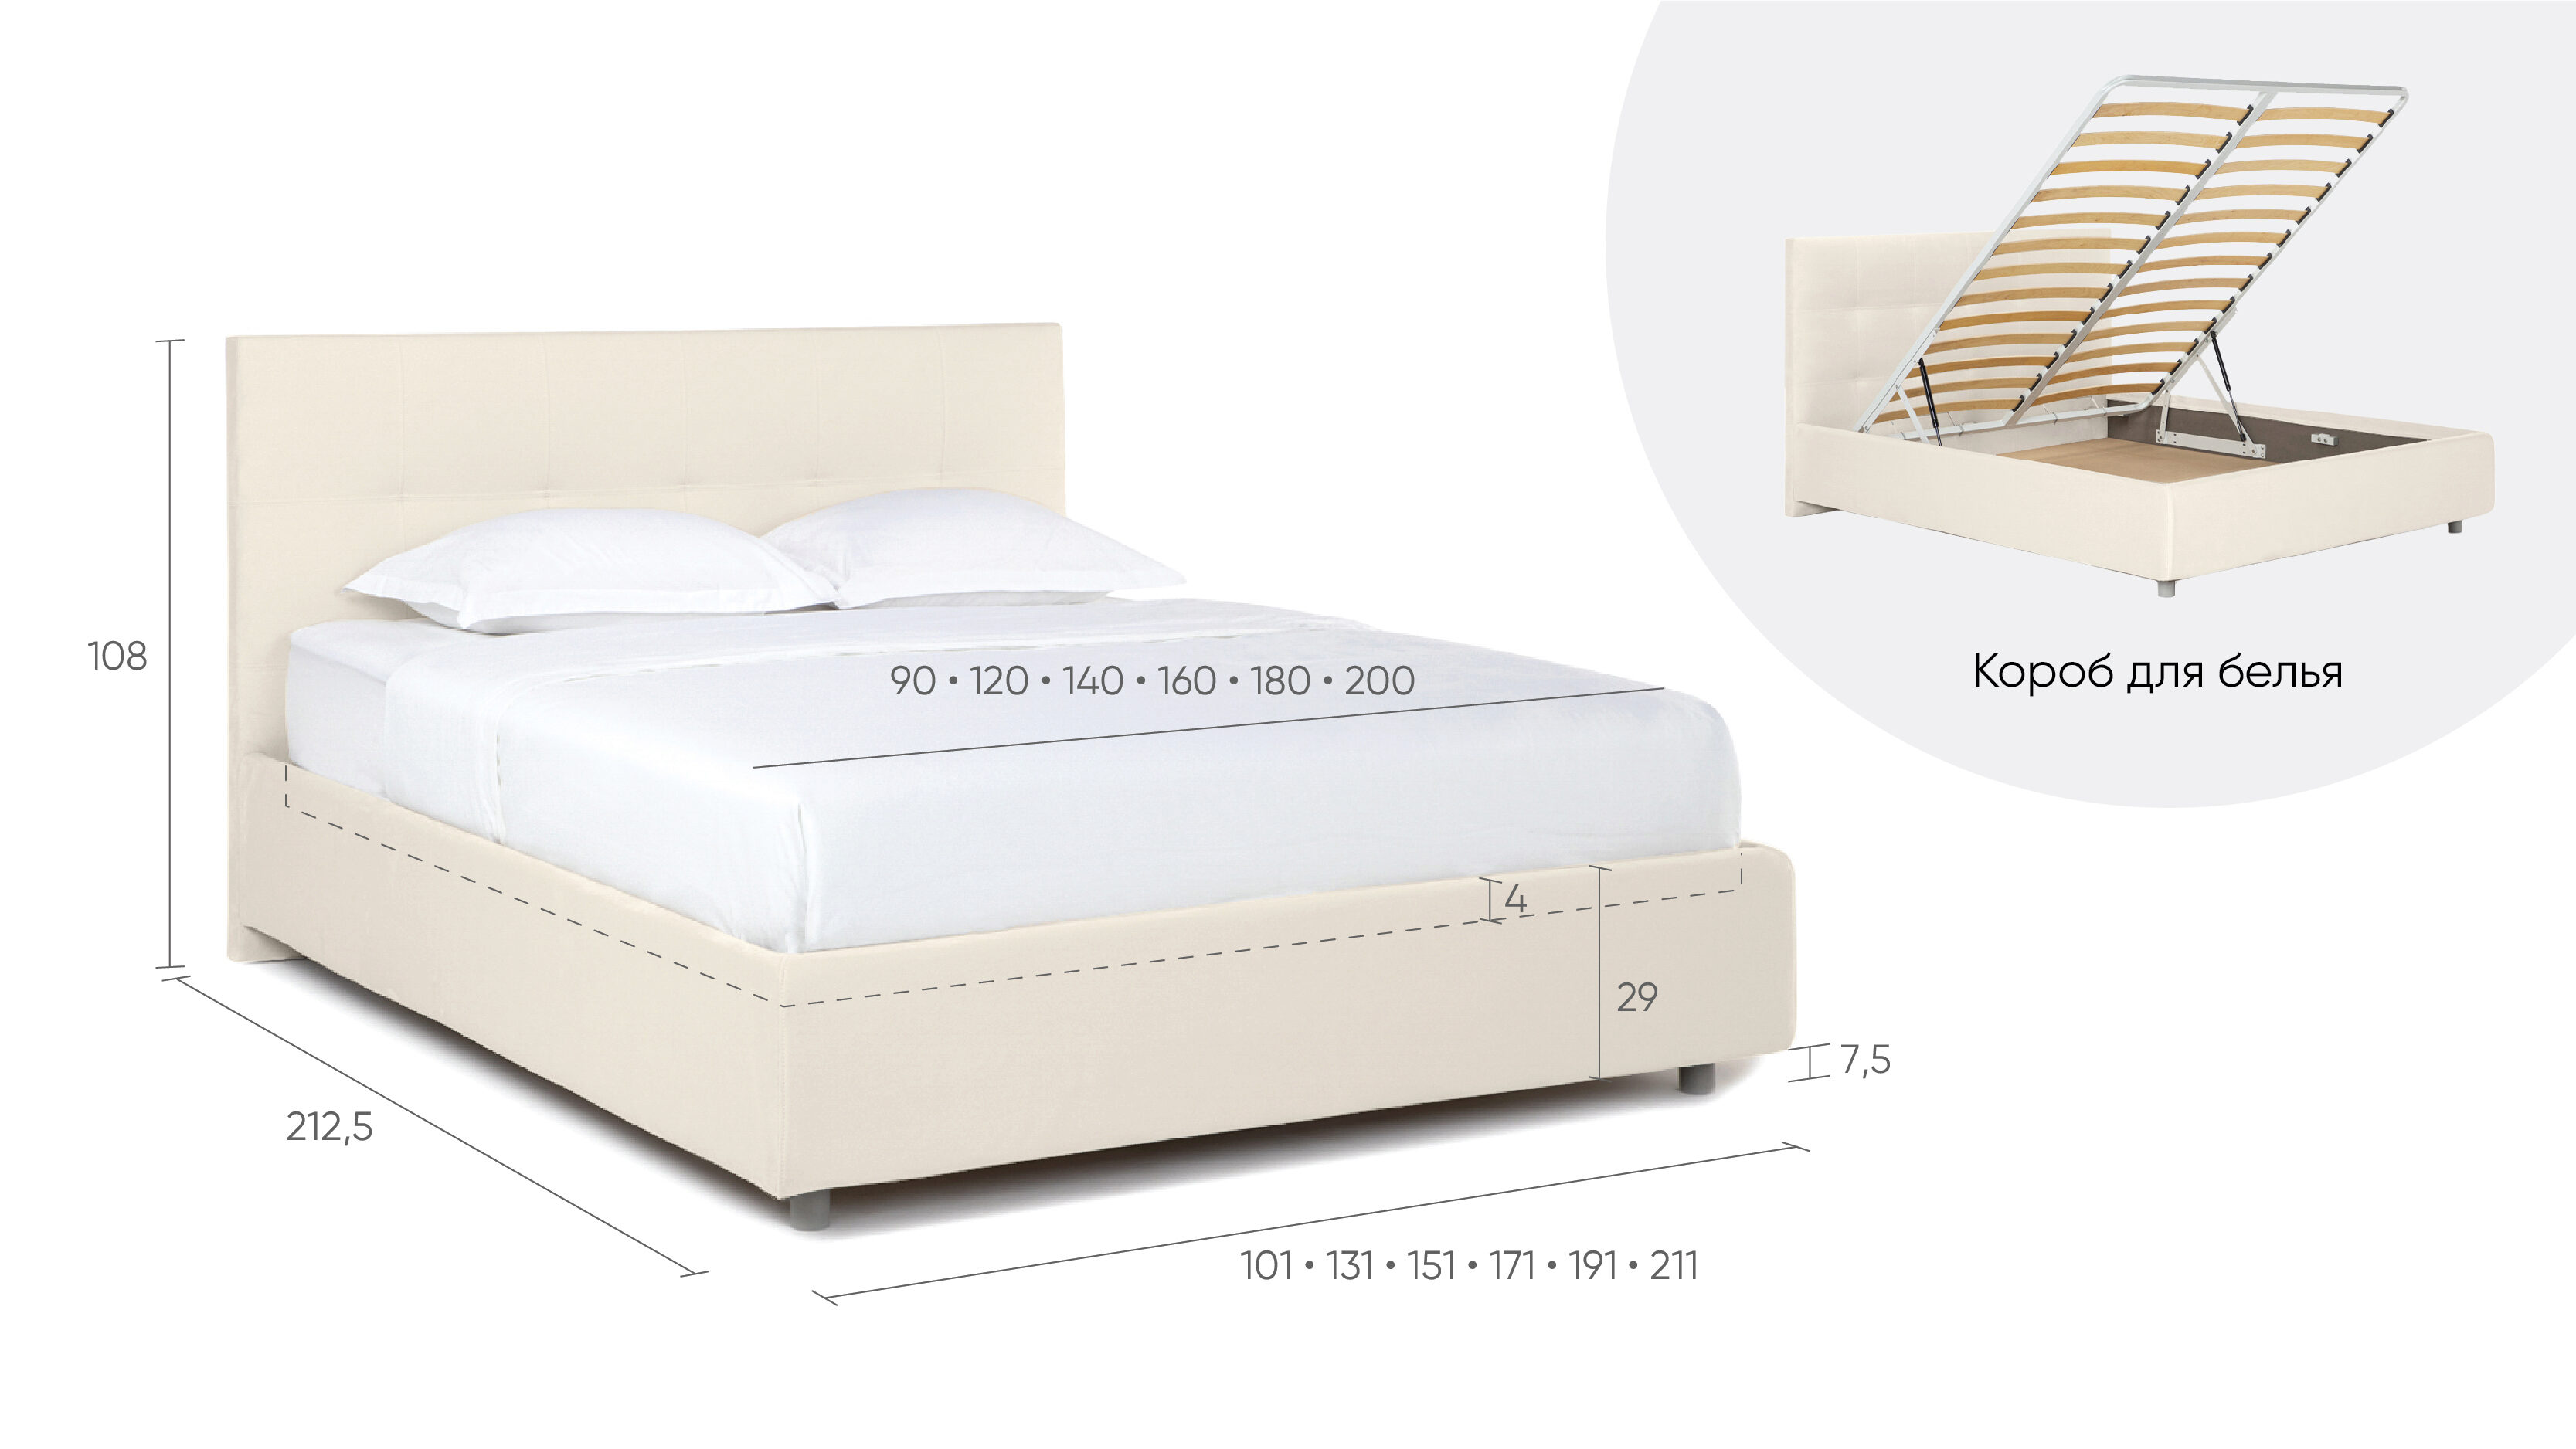 Рейтинг кроватей двуспальных с подъемным механизмом по качеству производителей